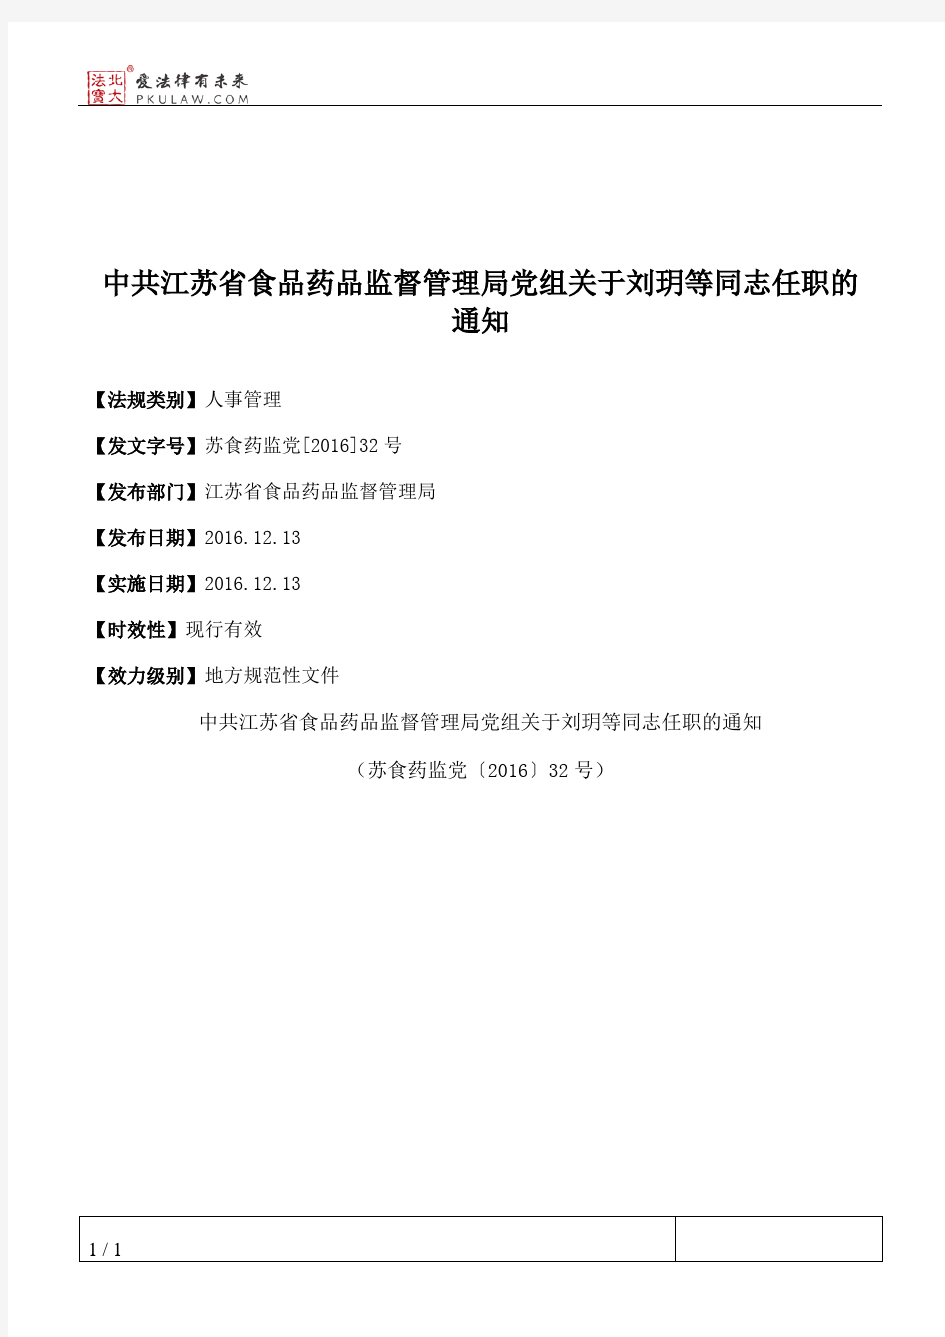 中共江苏省食品药品监督管理局党组关于刘玥等同志任职的通知